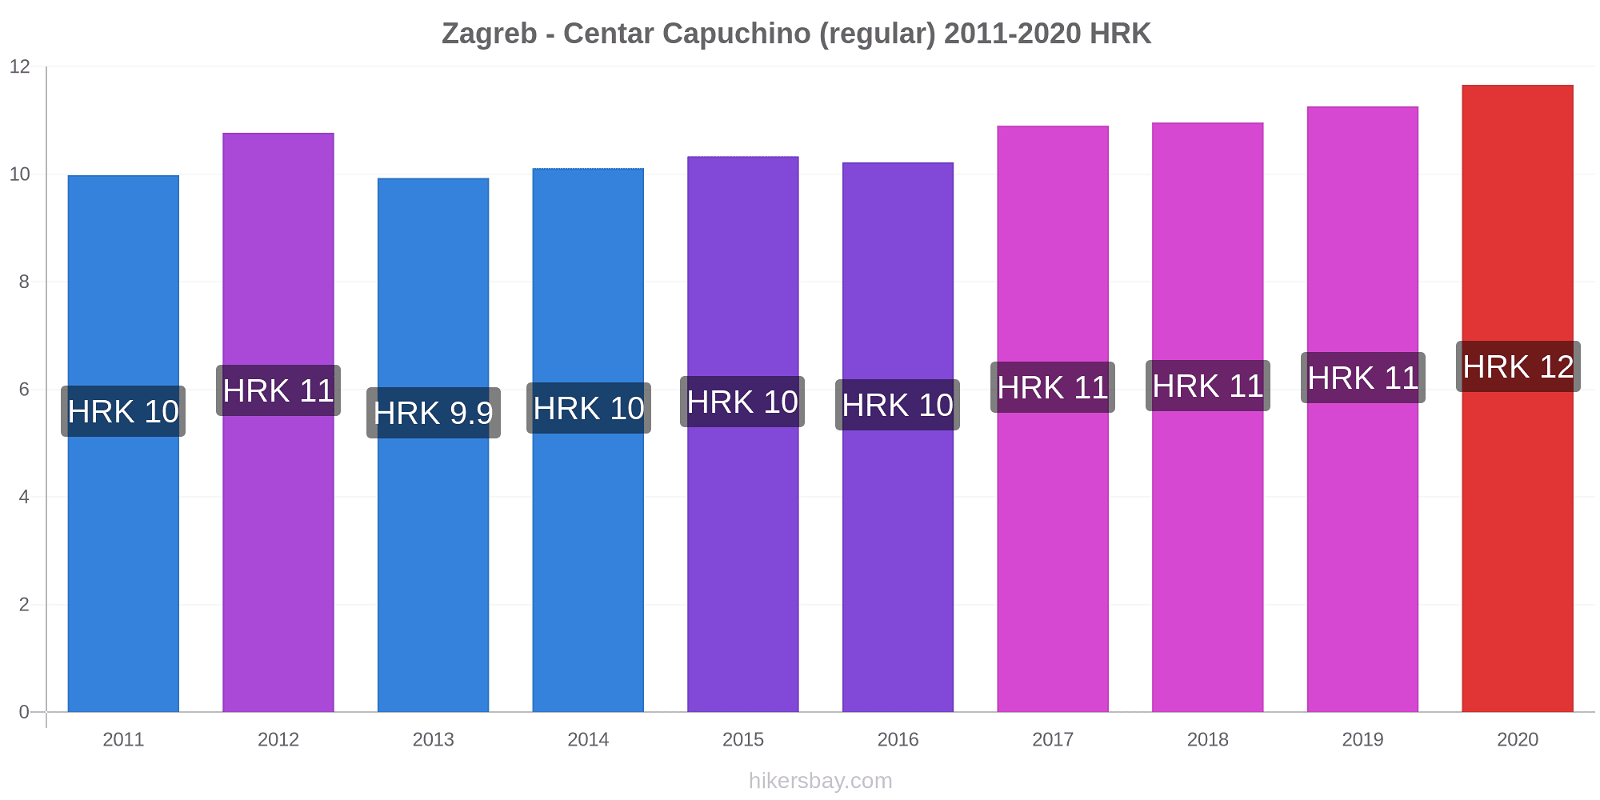 Zagreb - Centar cambios de precios Capuchino (regular) hikersbay.com